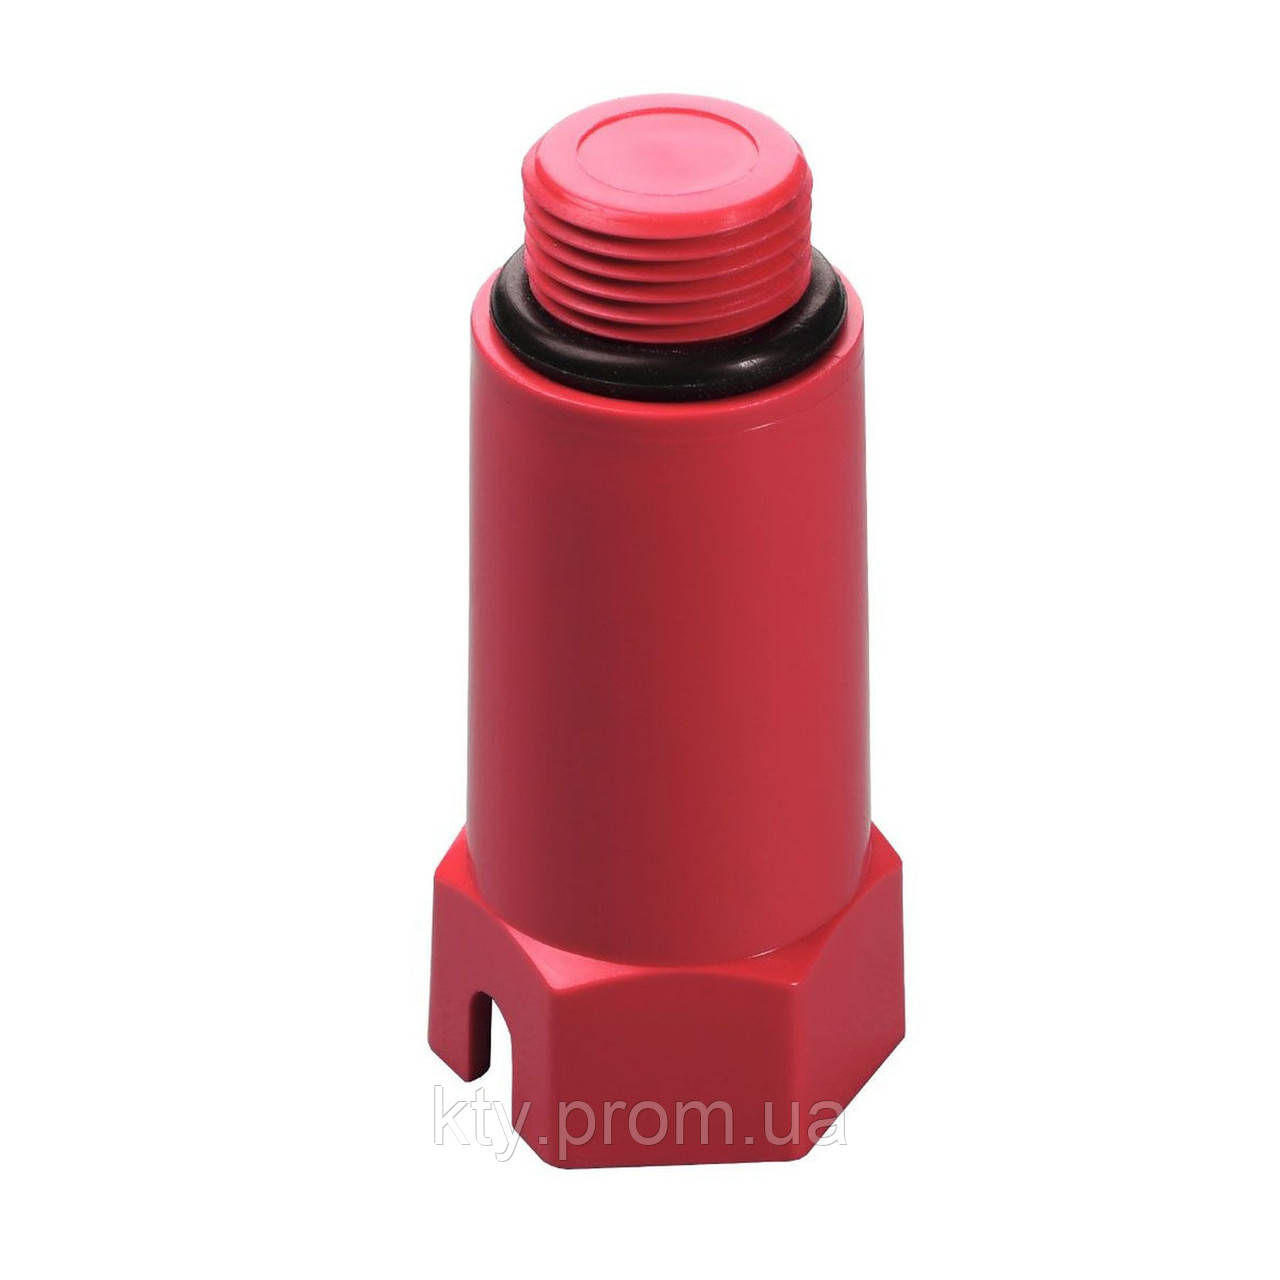 Заглушка удлиненная наружная резьба для полипропиленовых труб VS Plast PPR 1028 1/2 дюйма, красная